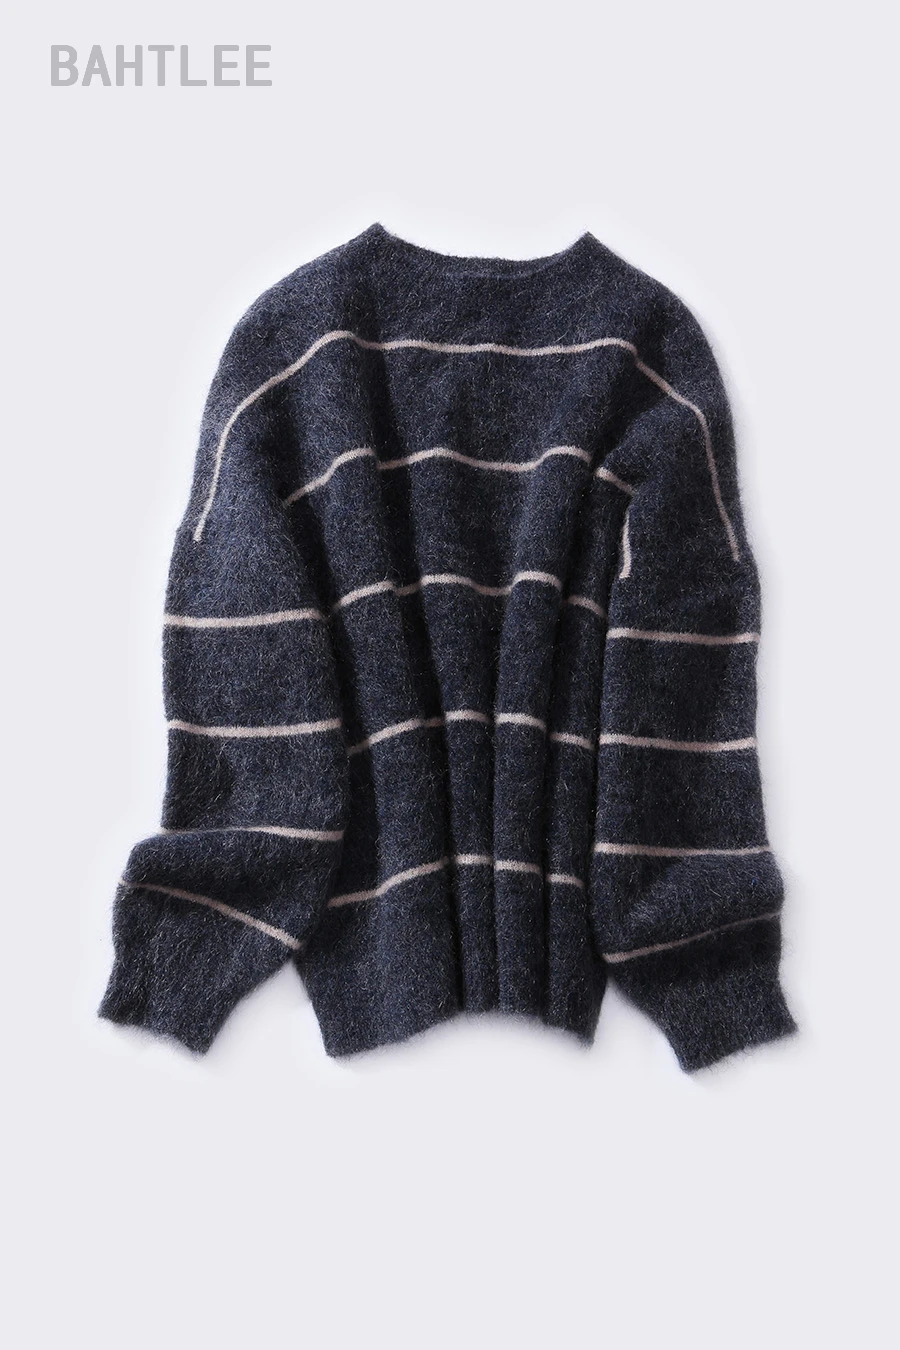 BAHTLEE весна осень женский Южно-Африканский мохер шерстяной вязаный пуловер свитер с круглым вырезом полосатый узор свободный стиль